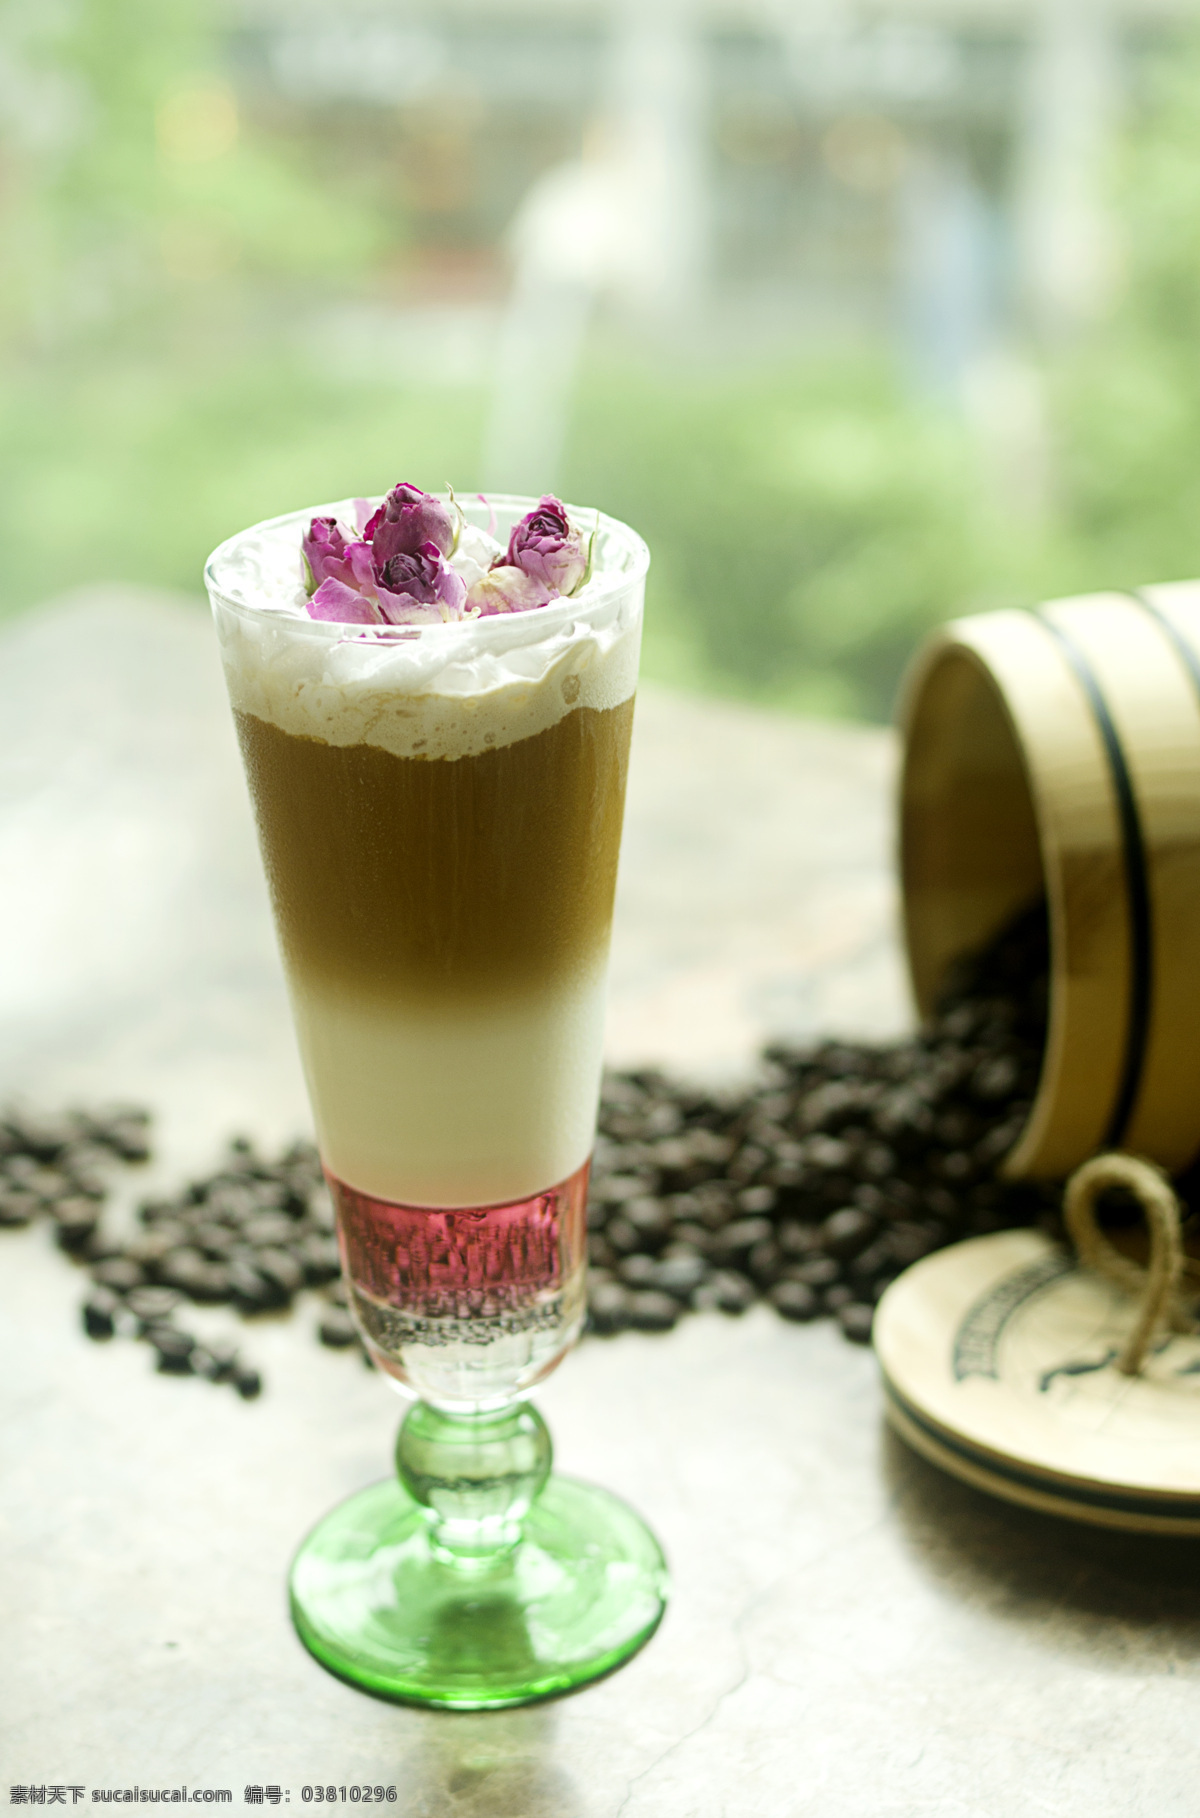 玫瑰冰咖啡 冰咖啡 玫瑰情怀冰 分层冰咖啡 咖啡 餐饮美食 饮料酒水